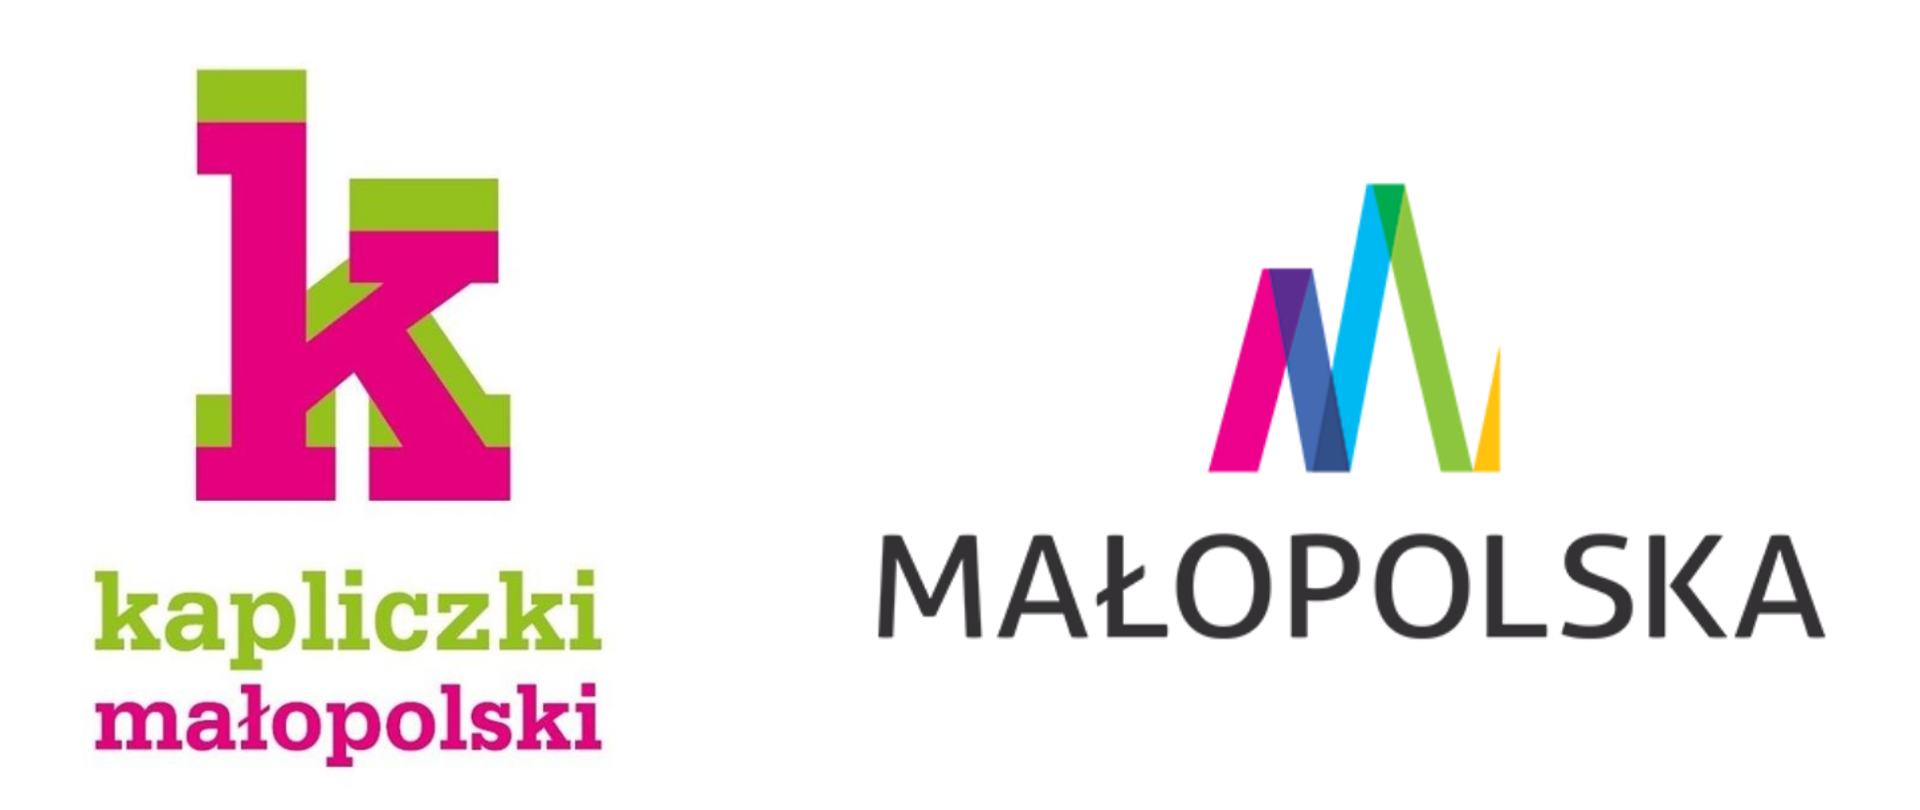 Logo programu "kapliczki małopolski" oraz Małopolski na białym tle